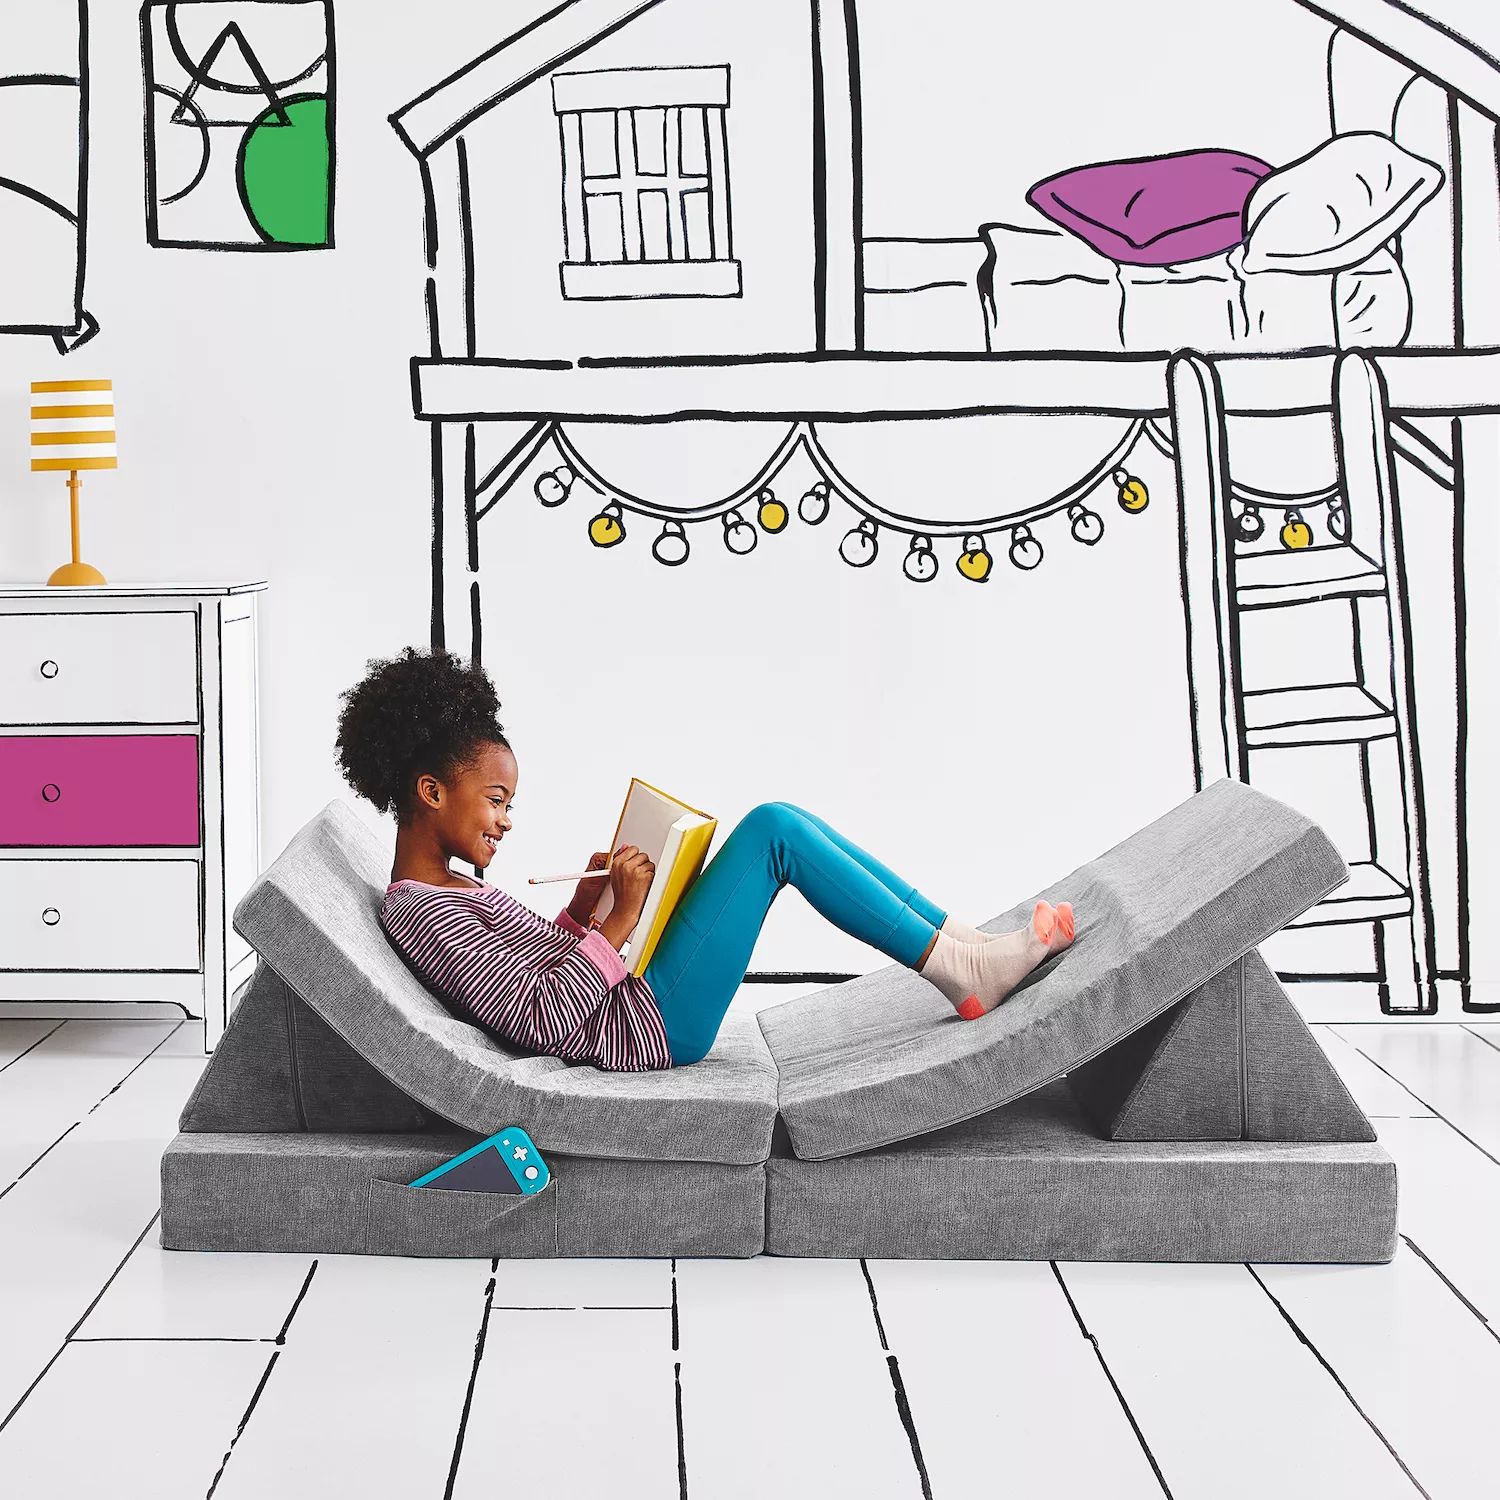 Складной трансформируемый игровой диван для детей и малышей Yourigami YOURIGAMI PLAY SOFA, синий складной трансформируемый игровой диван для детей и малышей yourigami yourigami play sofa синий